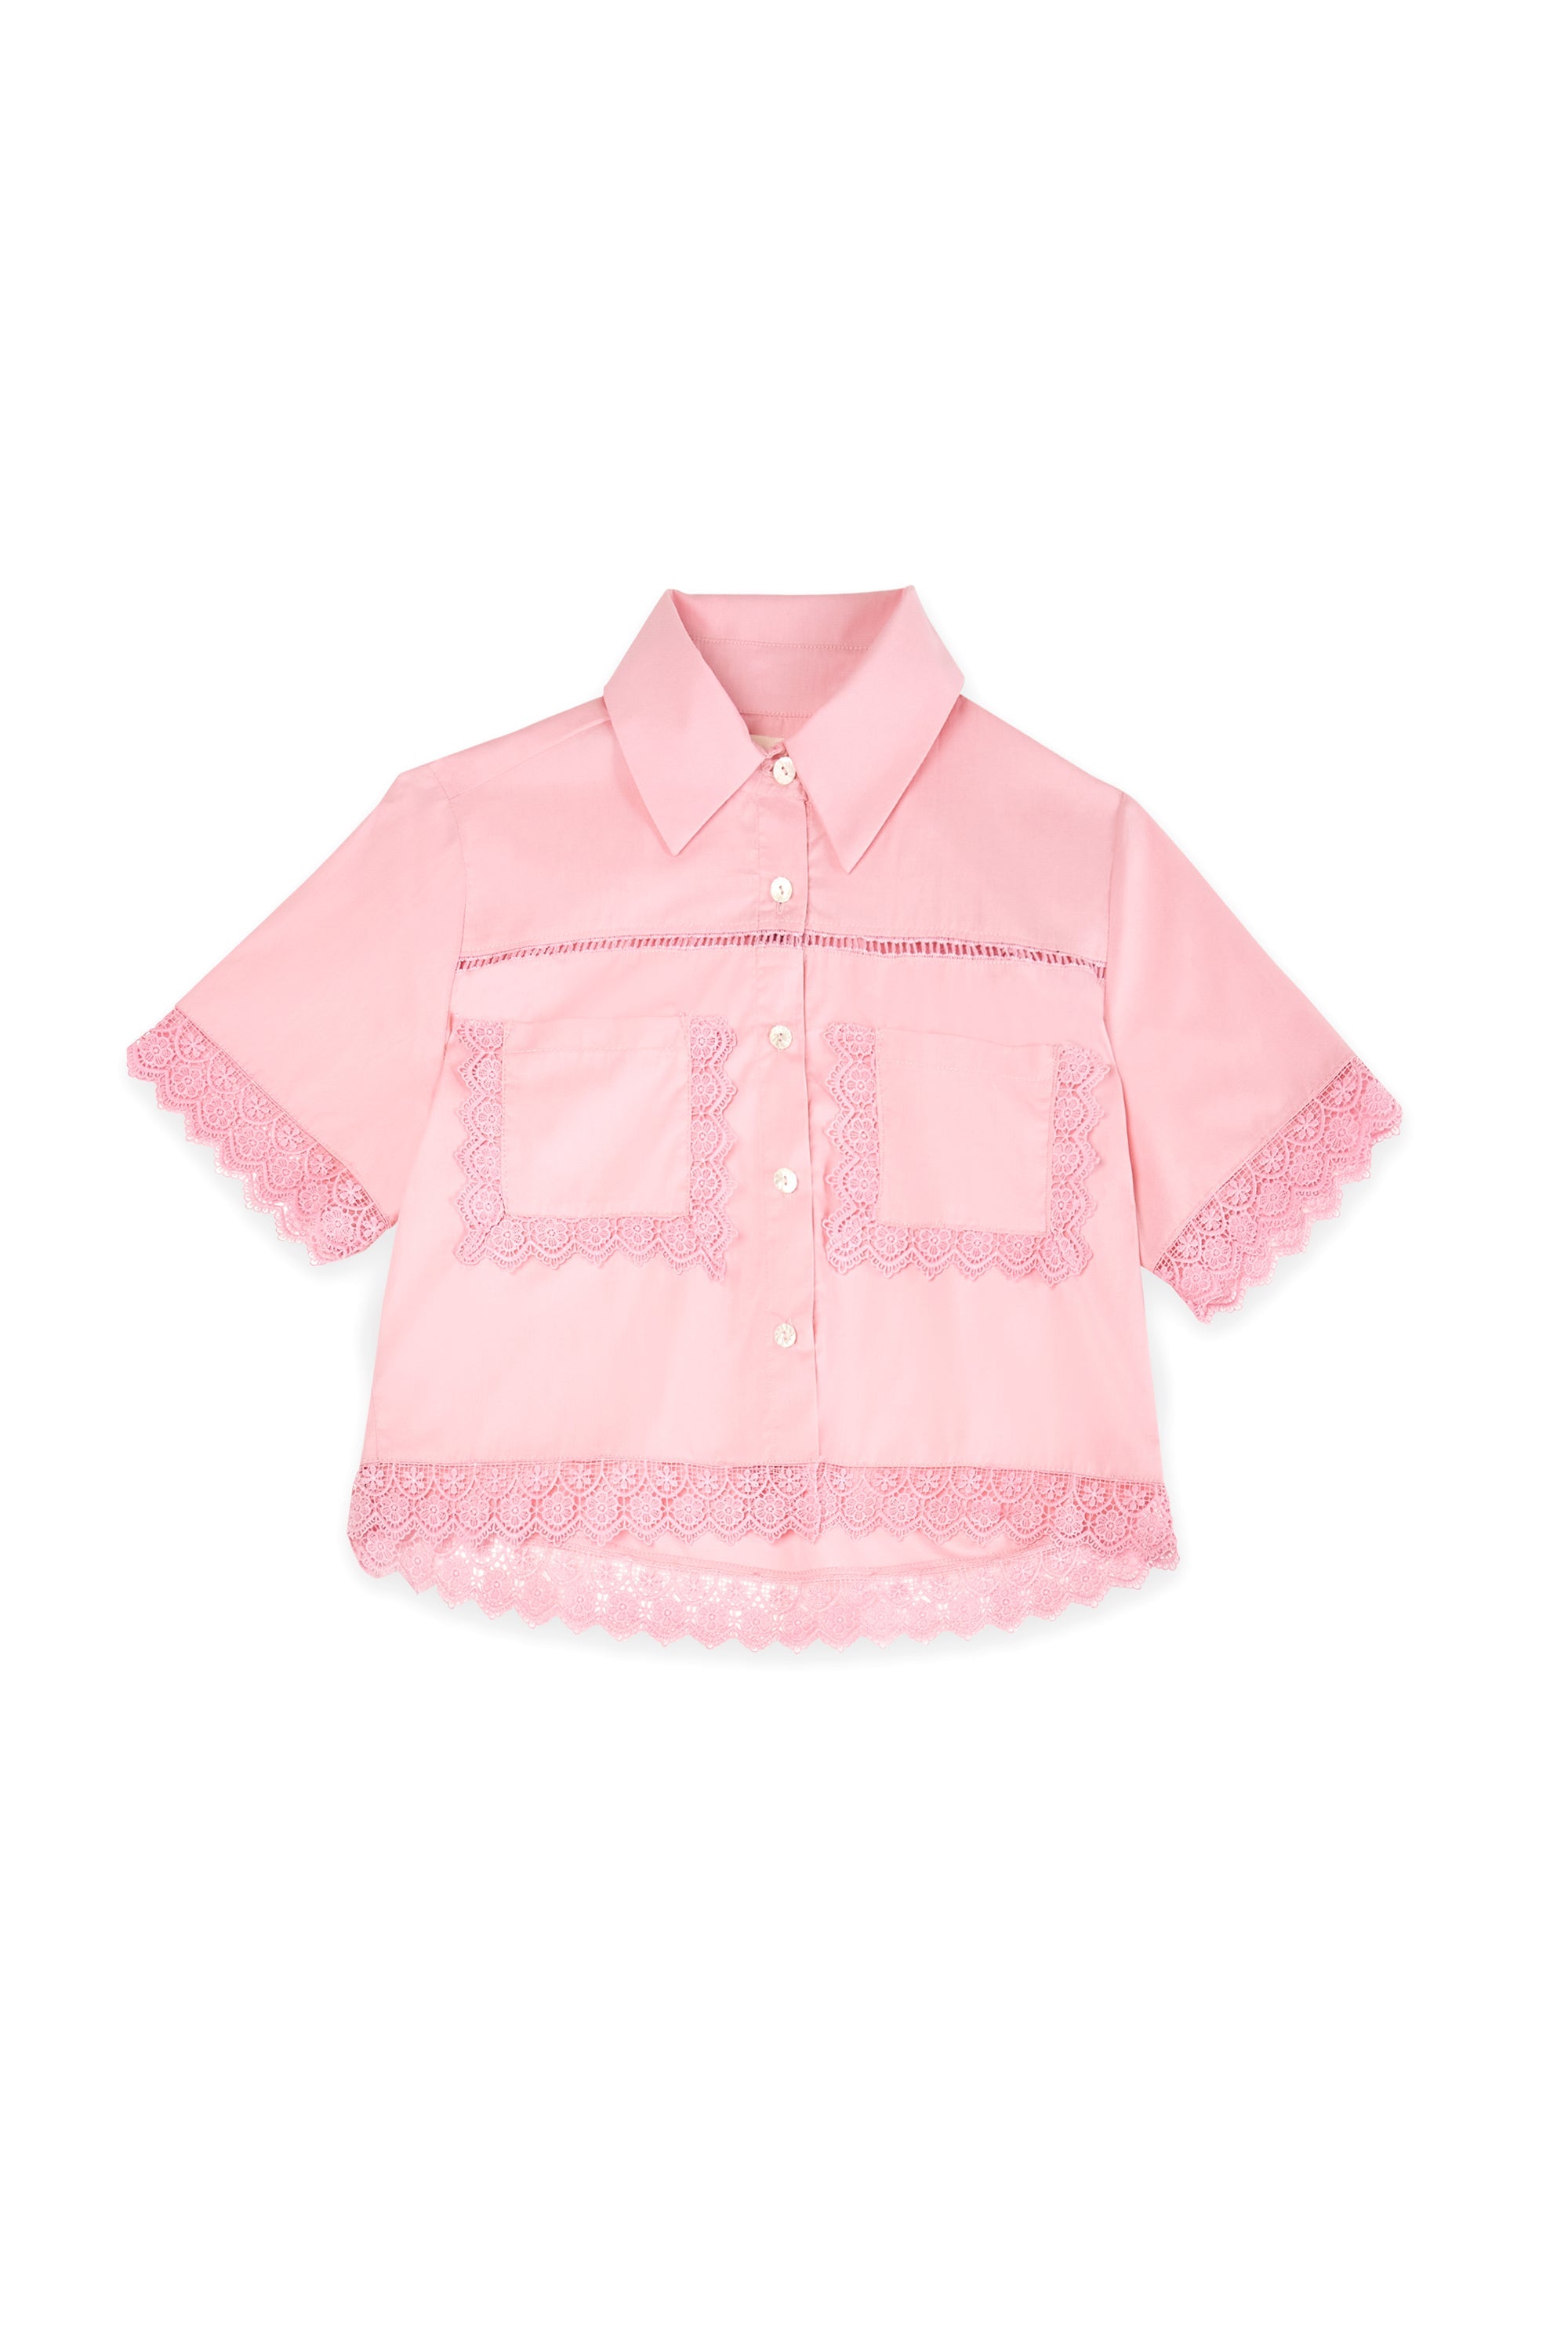 Marga blouse pink